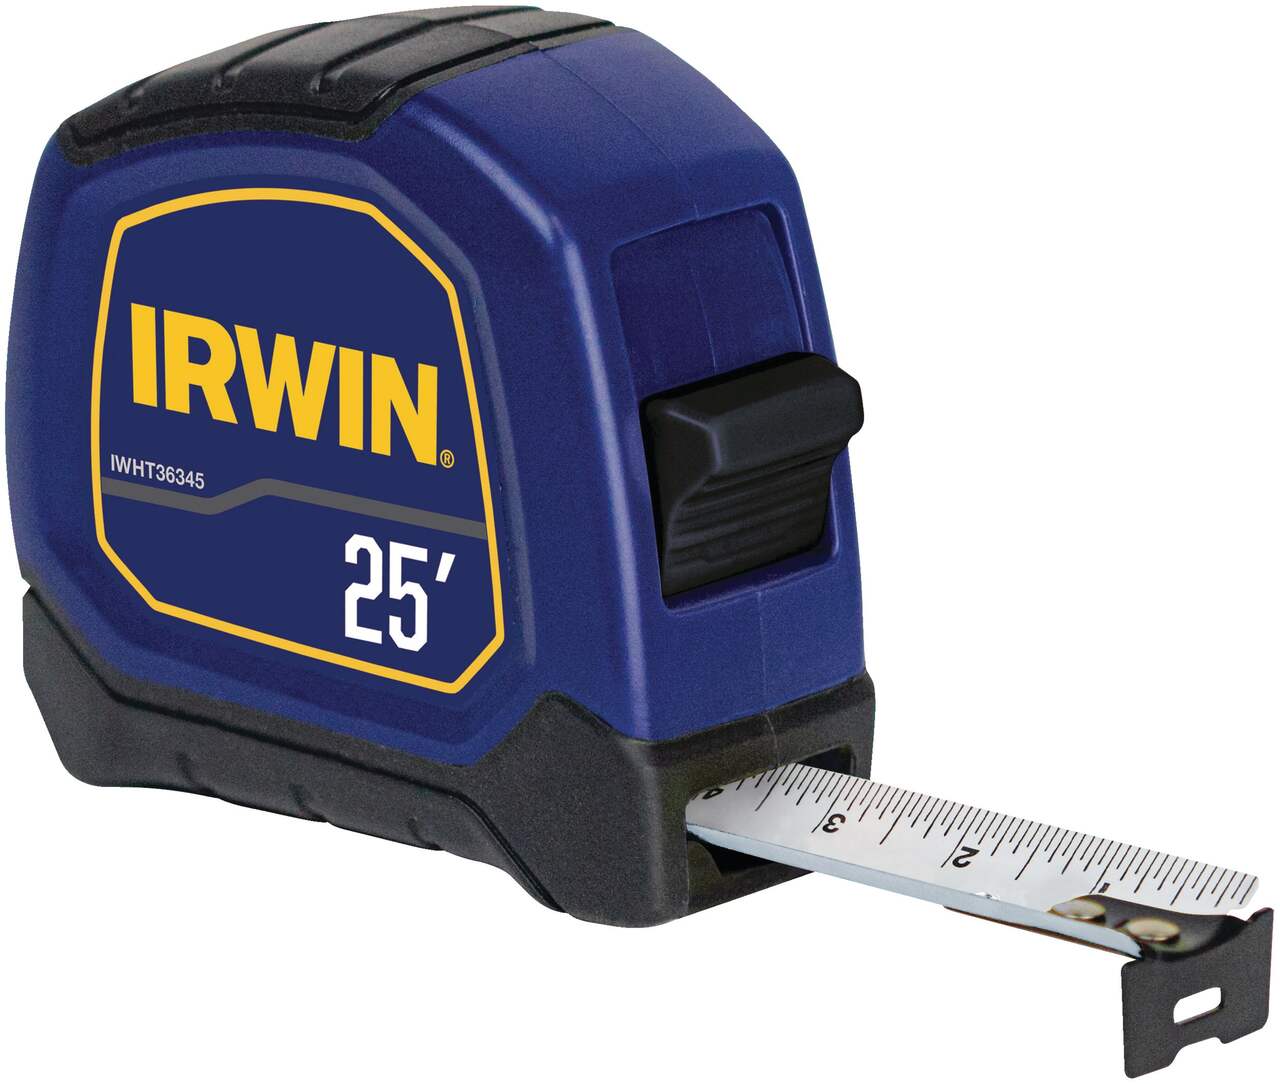 IRWIN IWHT36345 Bi-Material Tape Measure, 25-ft